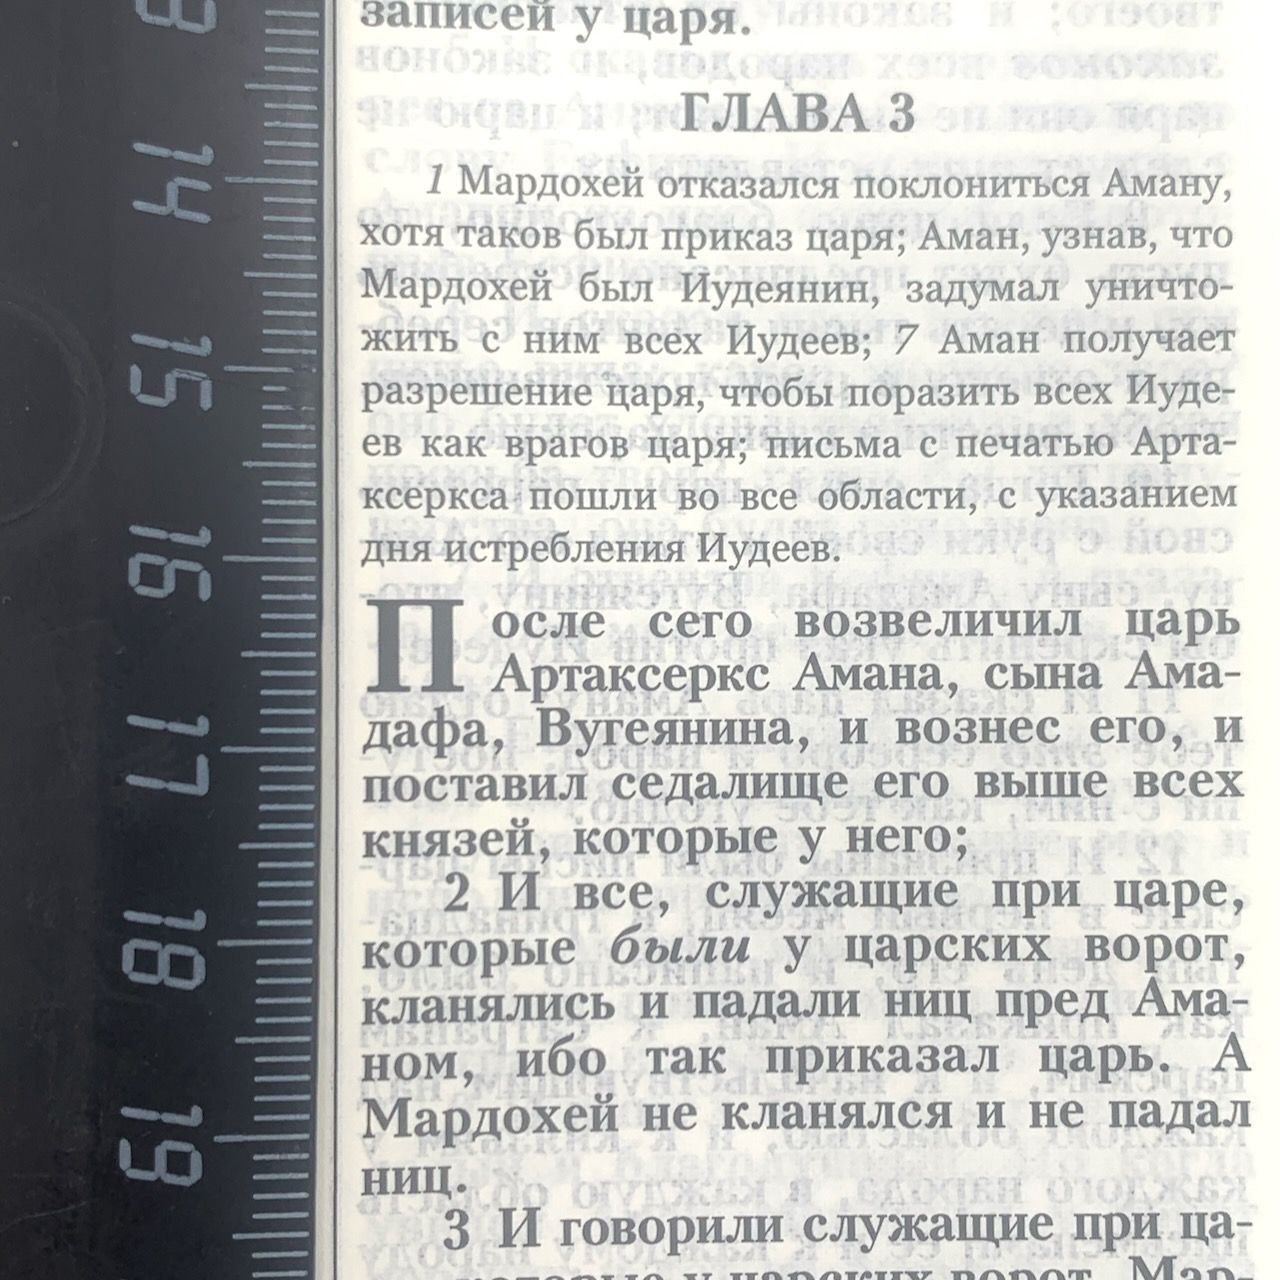 Библия 055 zti код 11552  переплет из эко кожи на молнии, цвет синяя с изображением яхт и надпись "Библия", средний формат, 145*205 мм, парал. места по центру страницы, кремовые страницы, серебристый обрез, индексы,  крупный шрифт